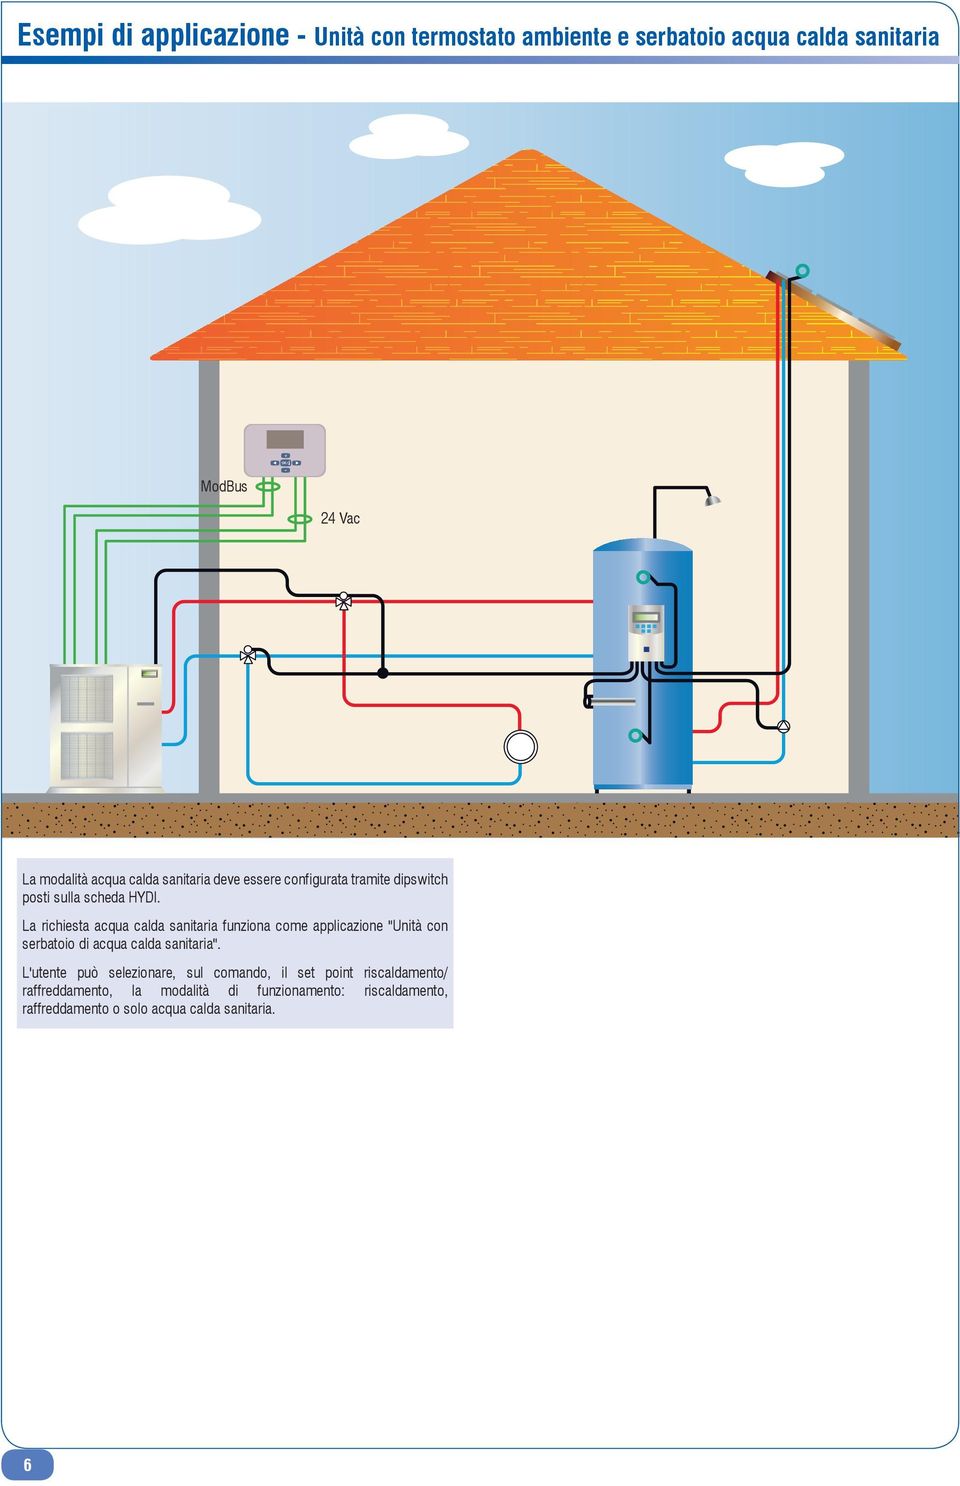 La richiesta acqua calda sanitaria funziona come applicazione "Unità con serbatoio di acqua calda sanitaria".